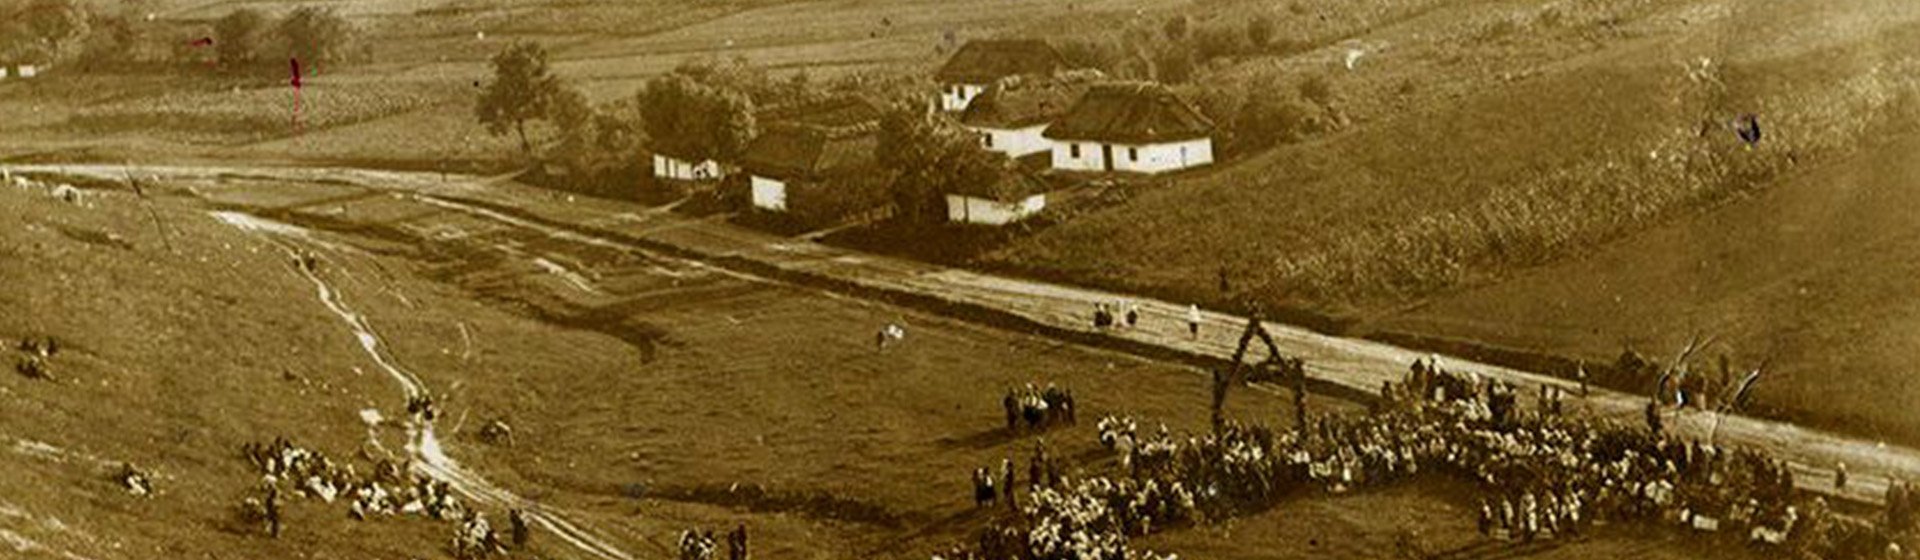 село 1920